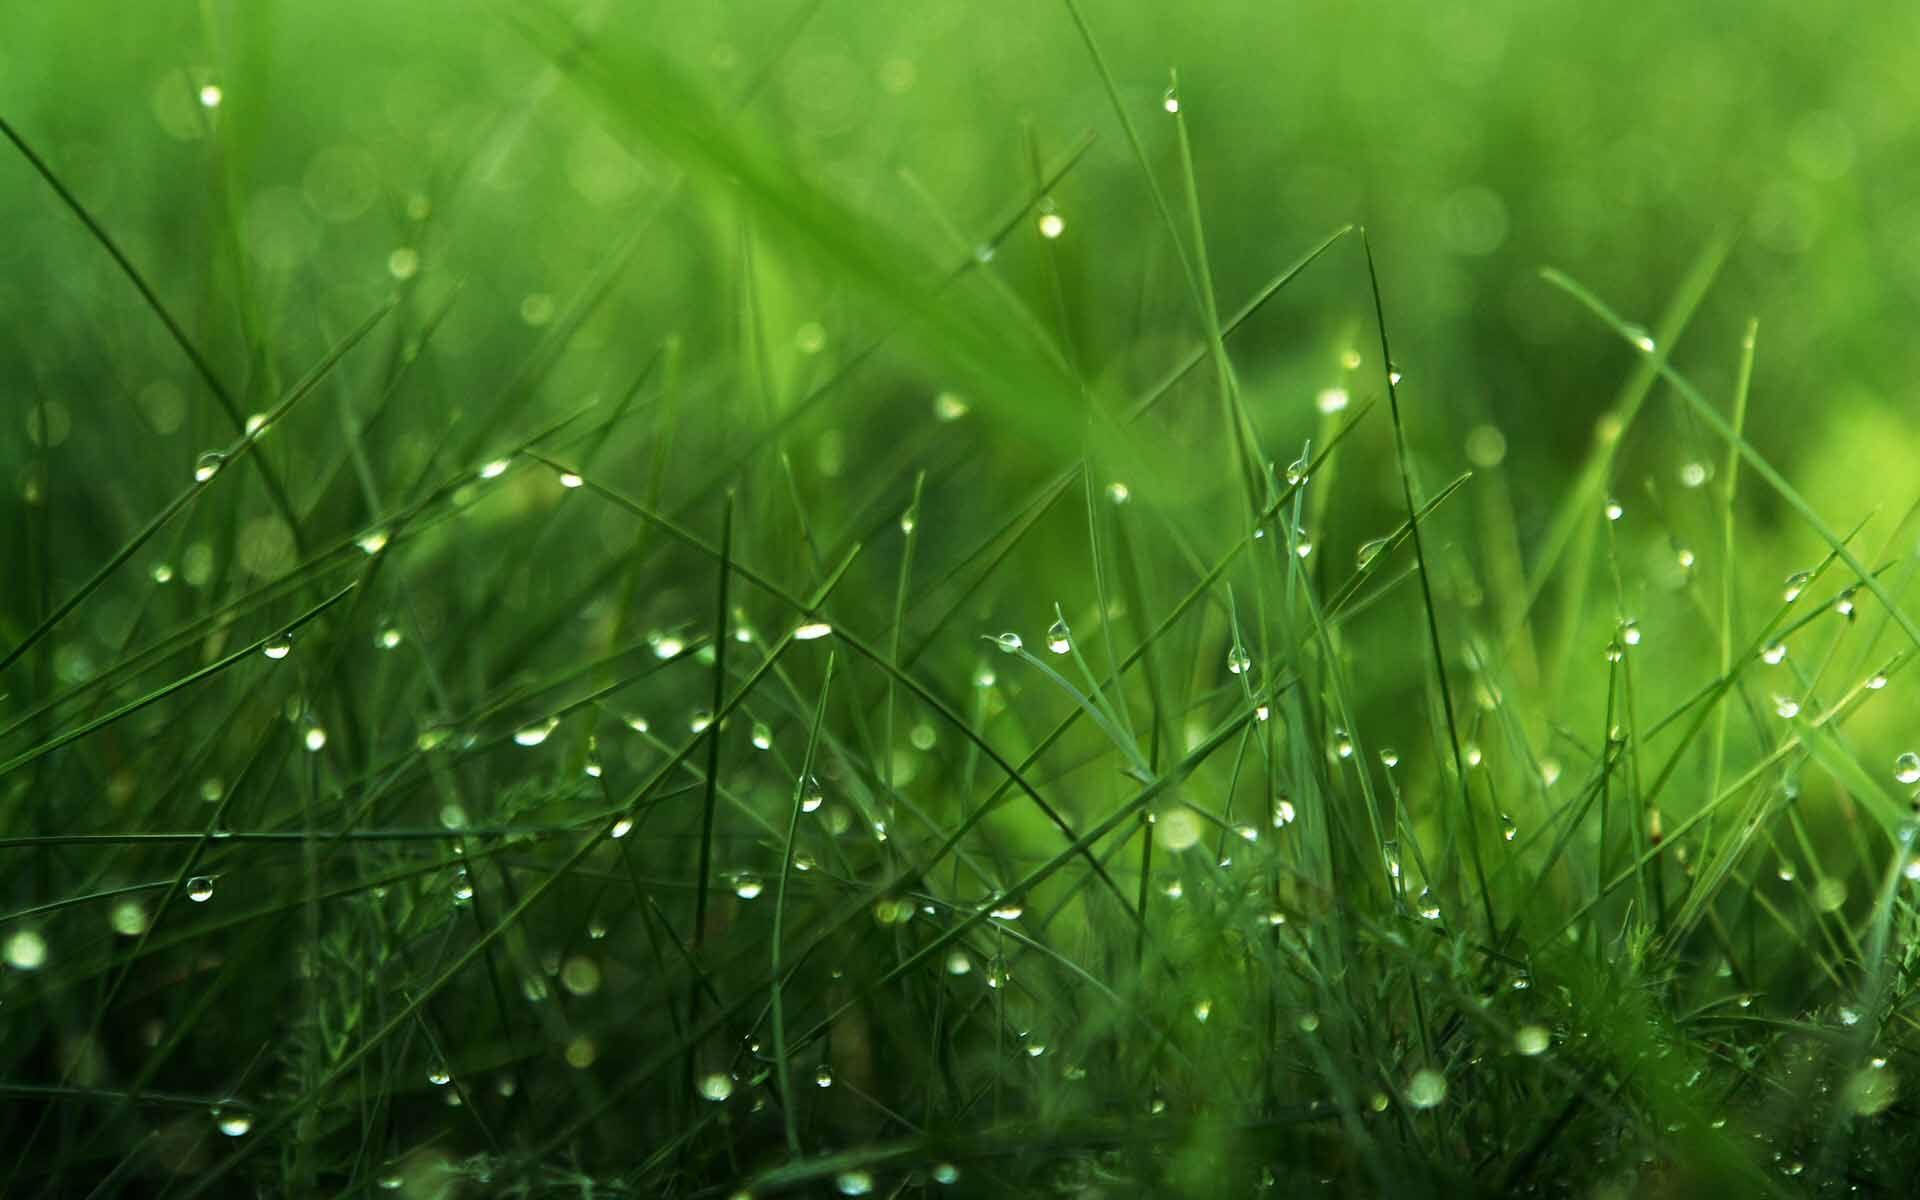 photos of dew drops. Dew Drops Wallpaper 8 1024x640 Dew Drops